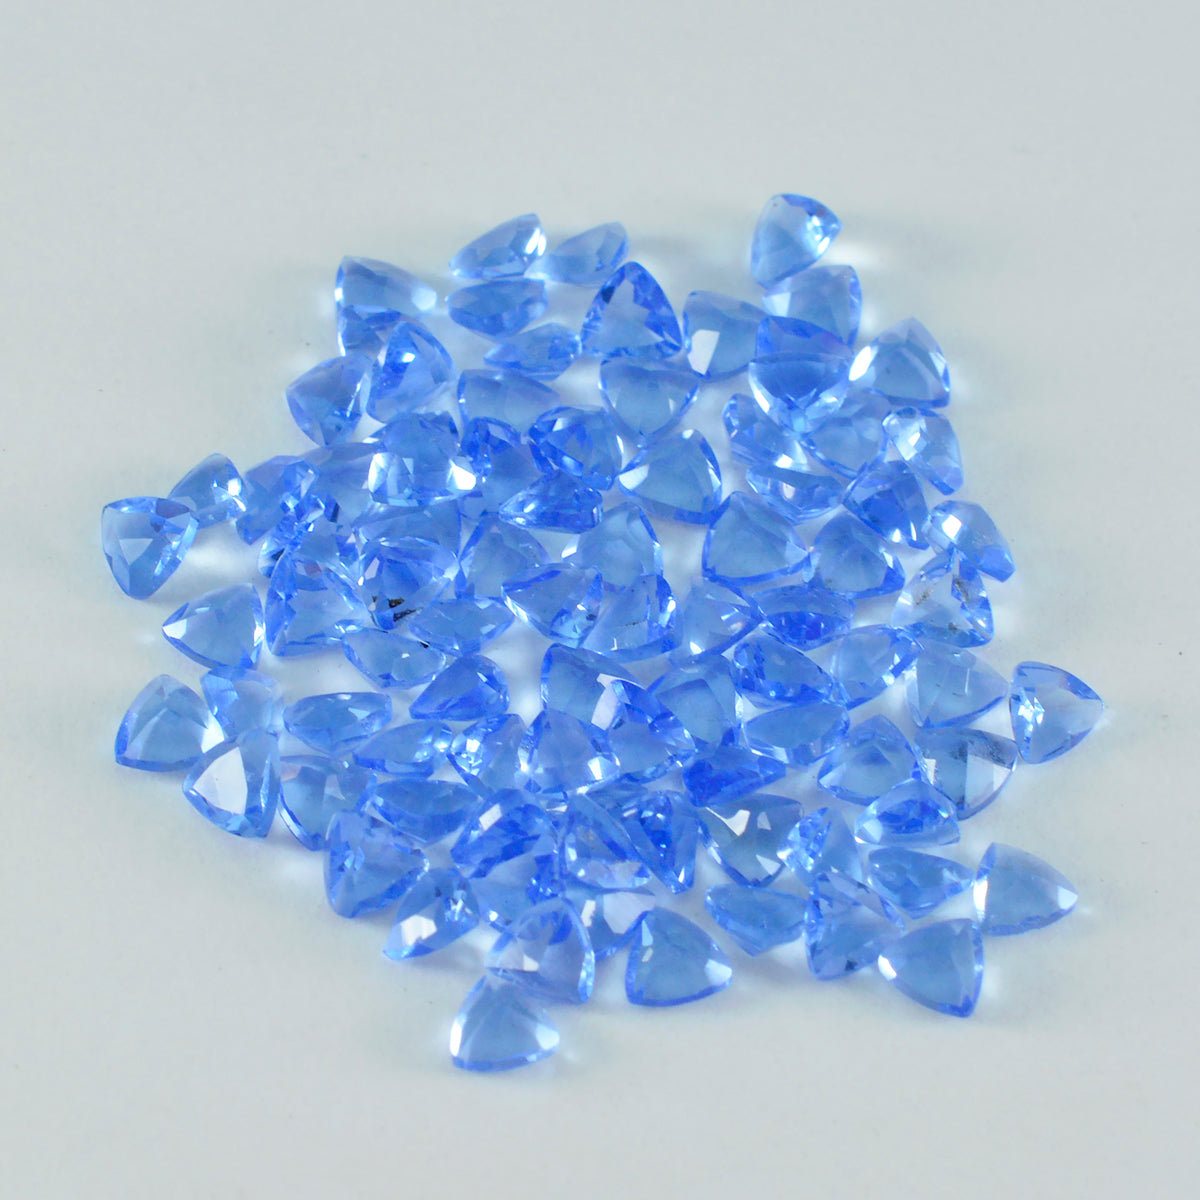 riyogems 1 шт. синий сапфир cz ограненный 3x3 мм форма триллиона прекрасный качественный камень